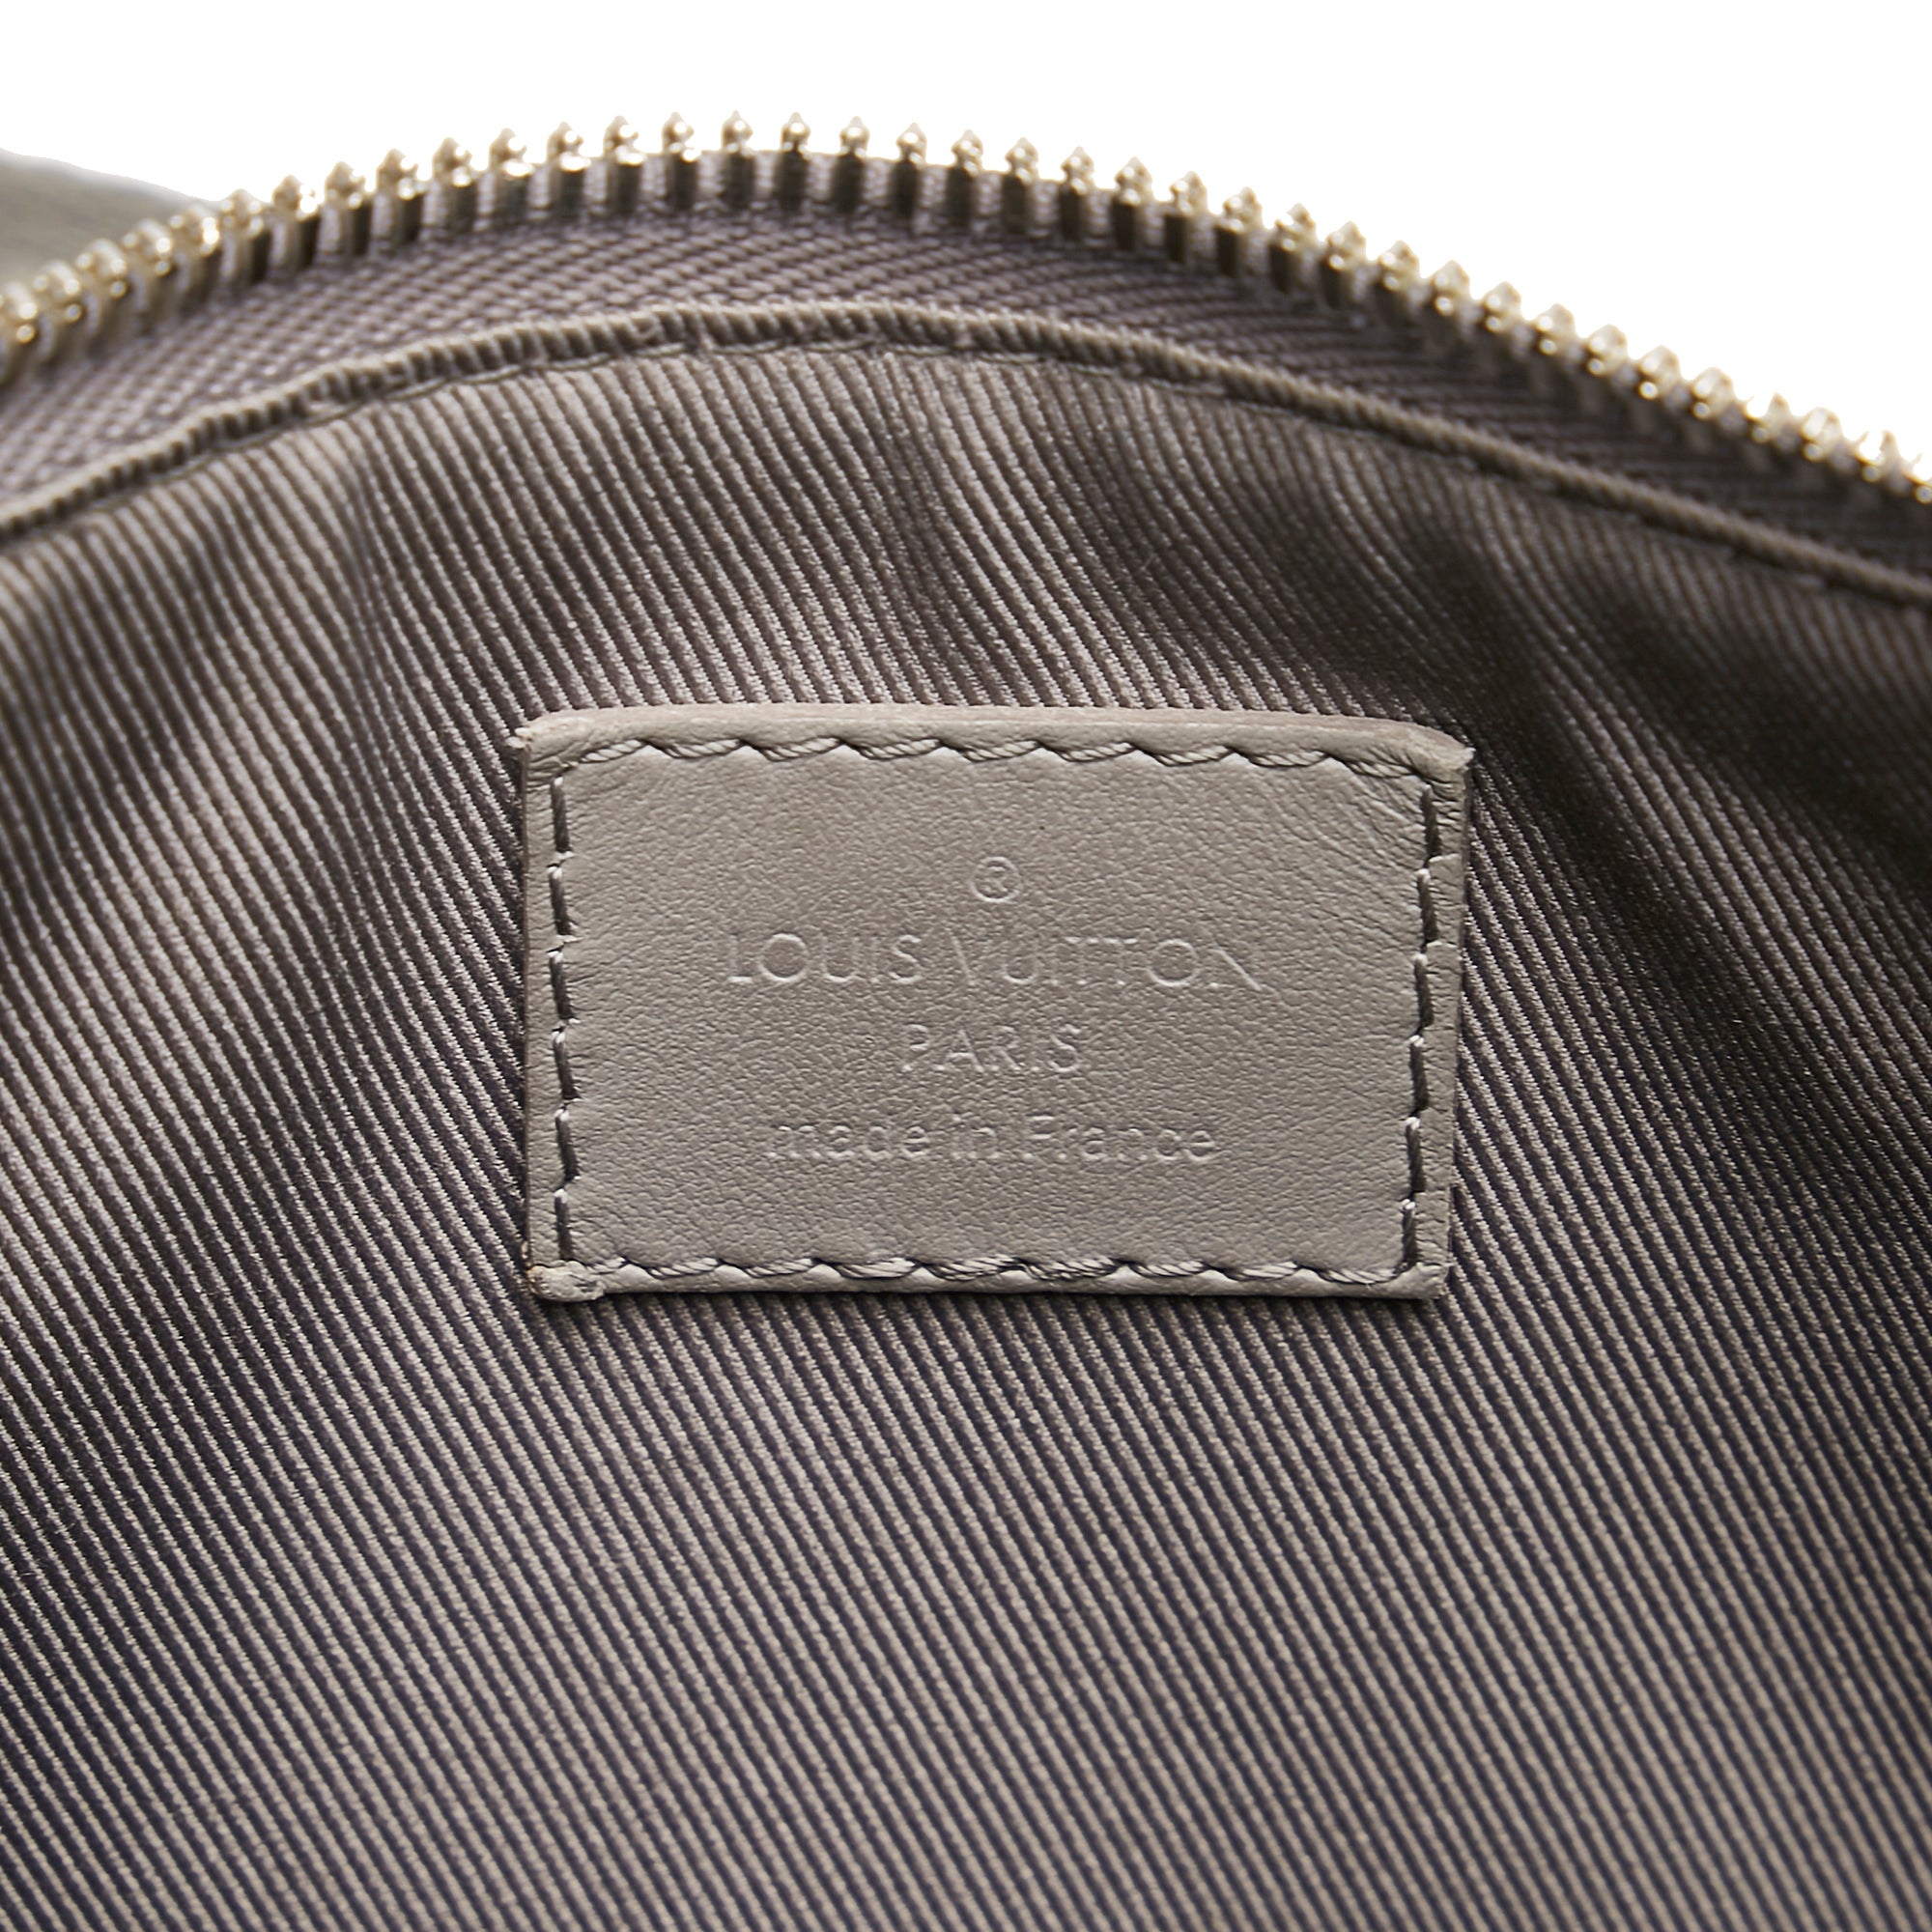 Louis Vuitton Keepall Travel Bag Grey Calfskin